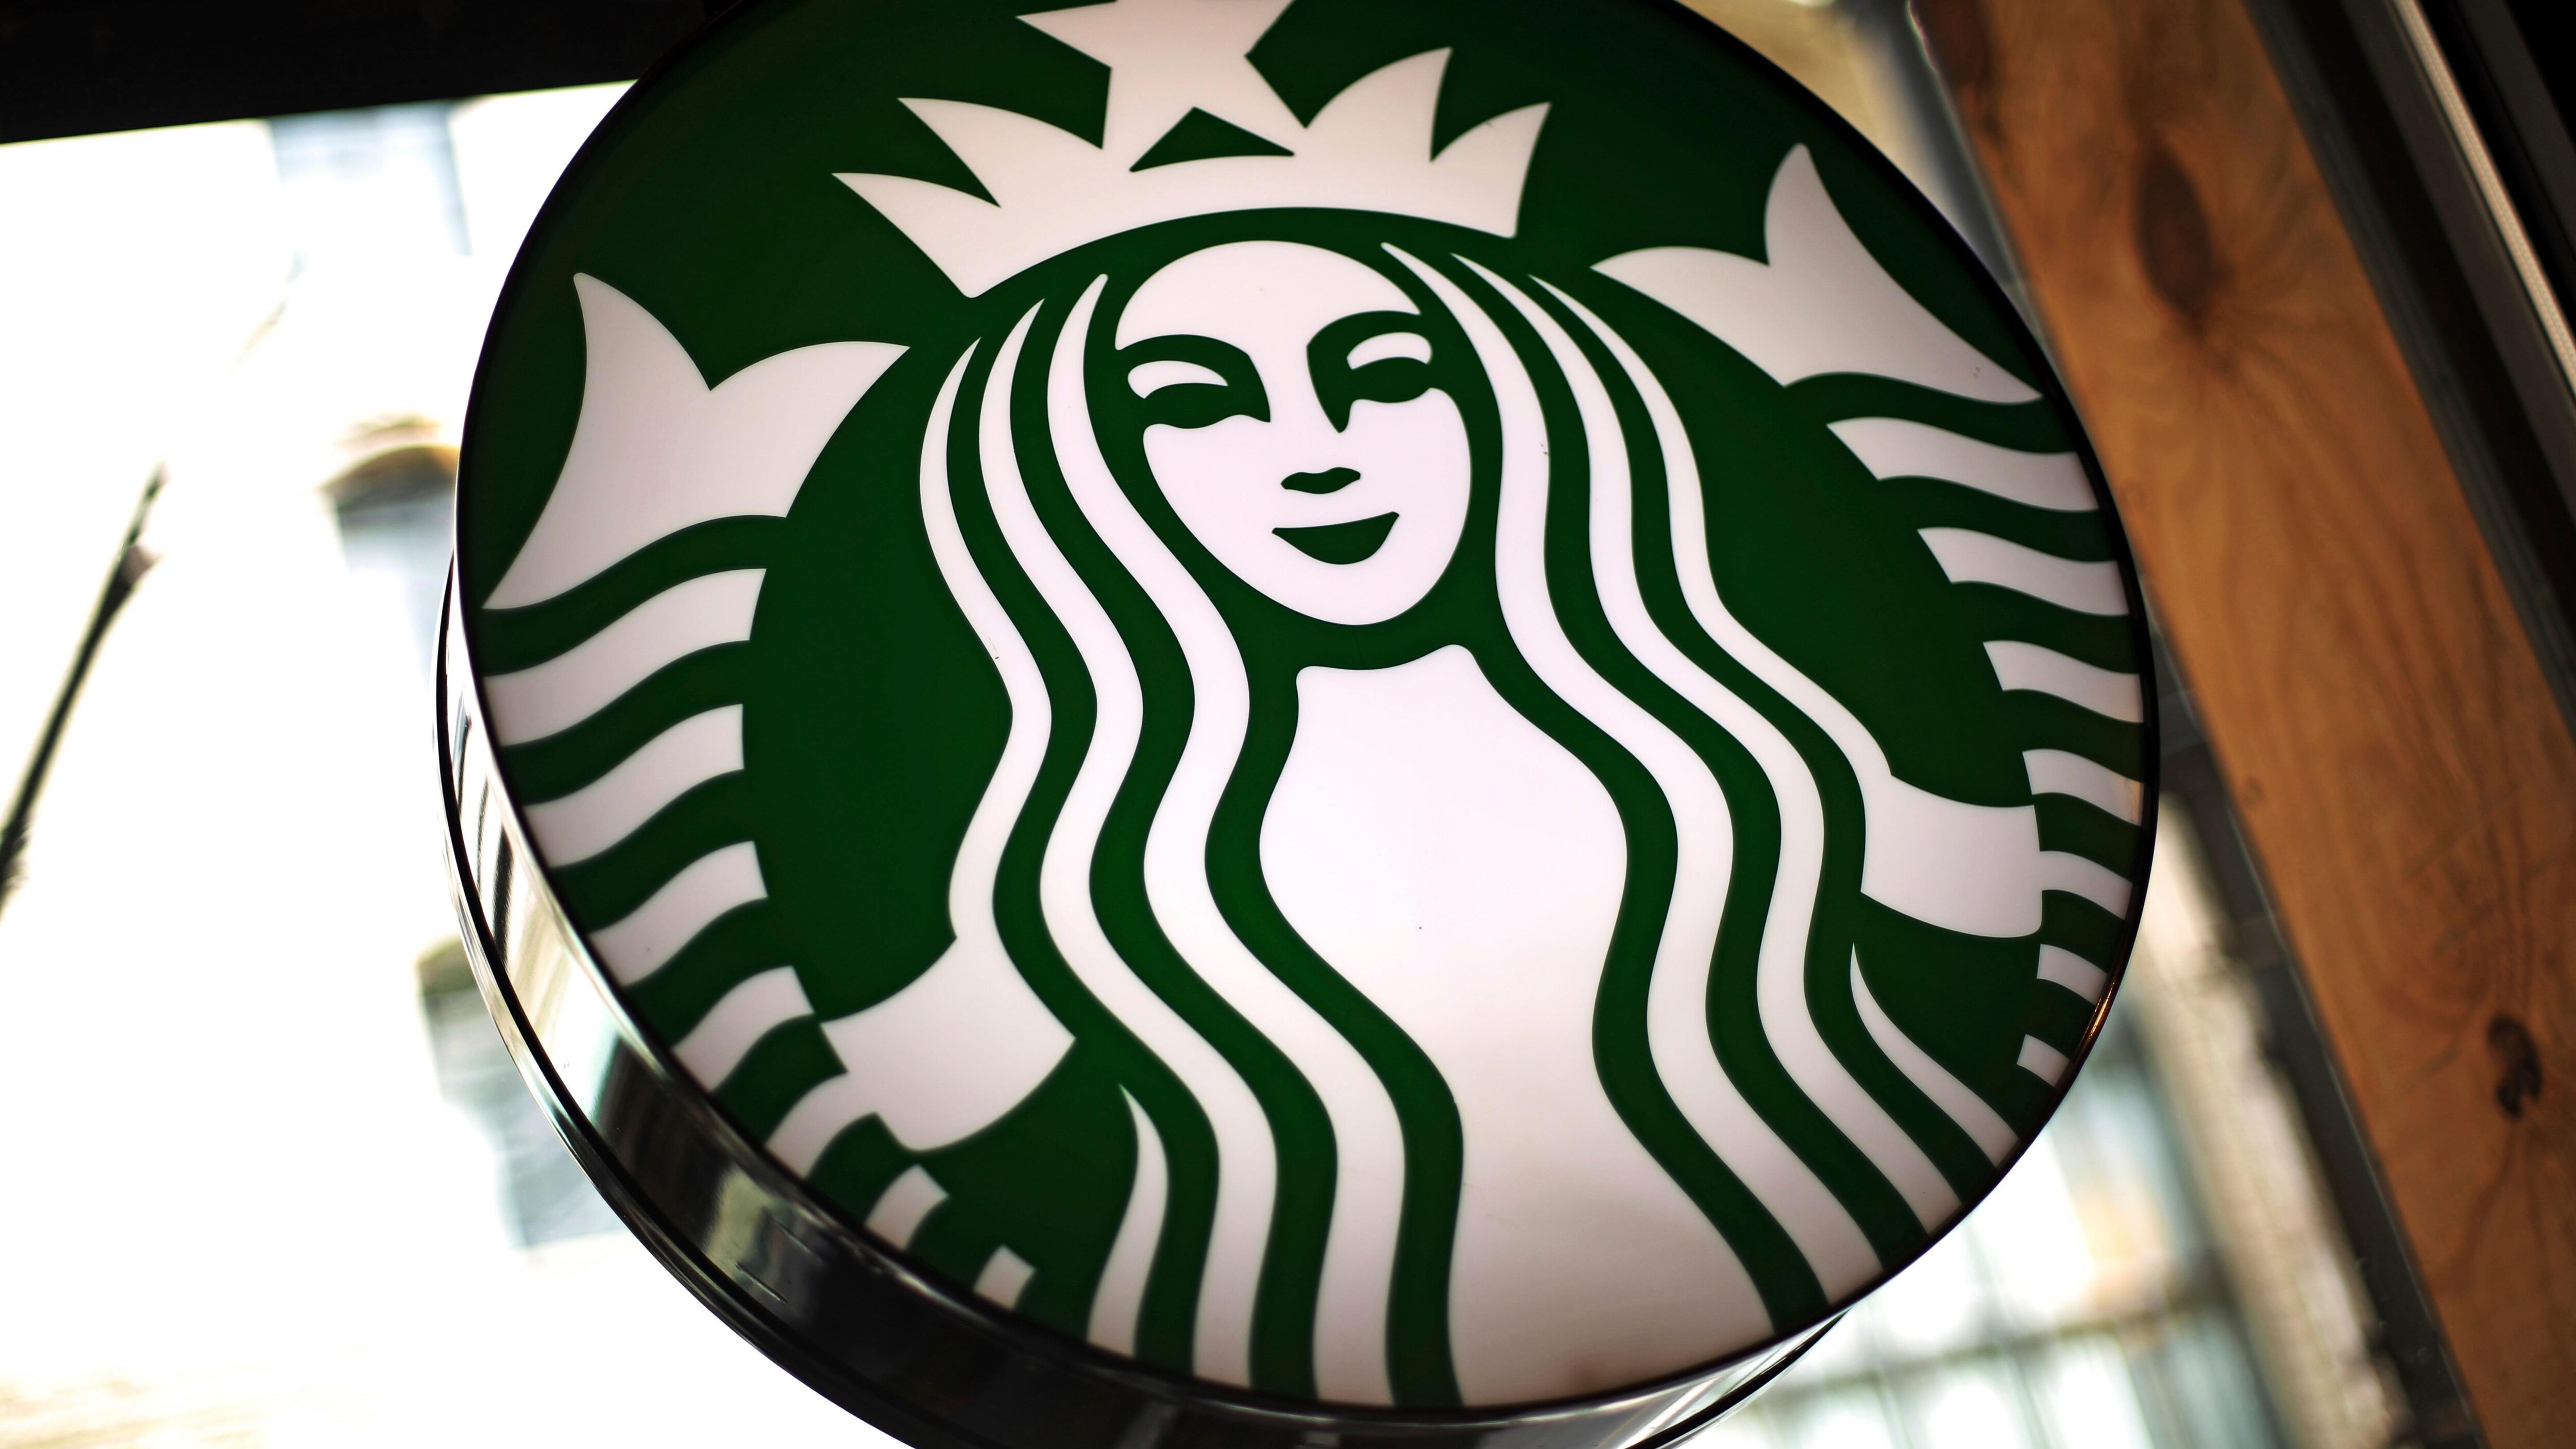 Deux Noirs arrêtés sans raison chez Starbucks : le chef de la police de Philadelphie s'excuse